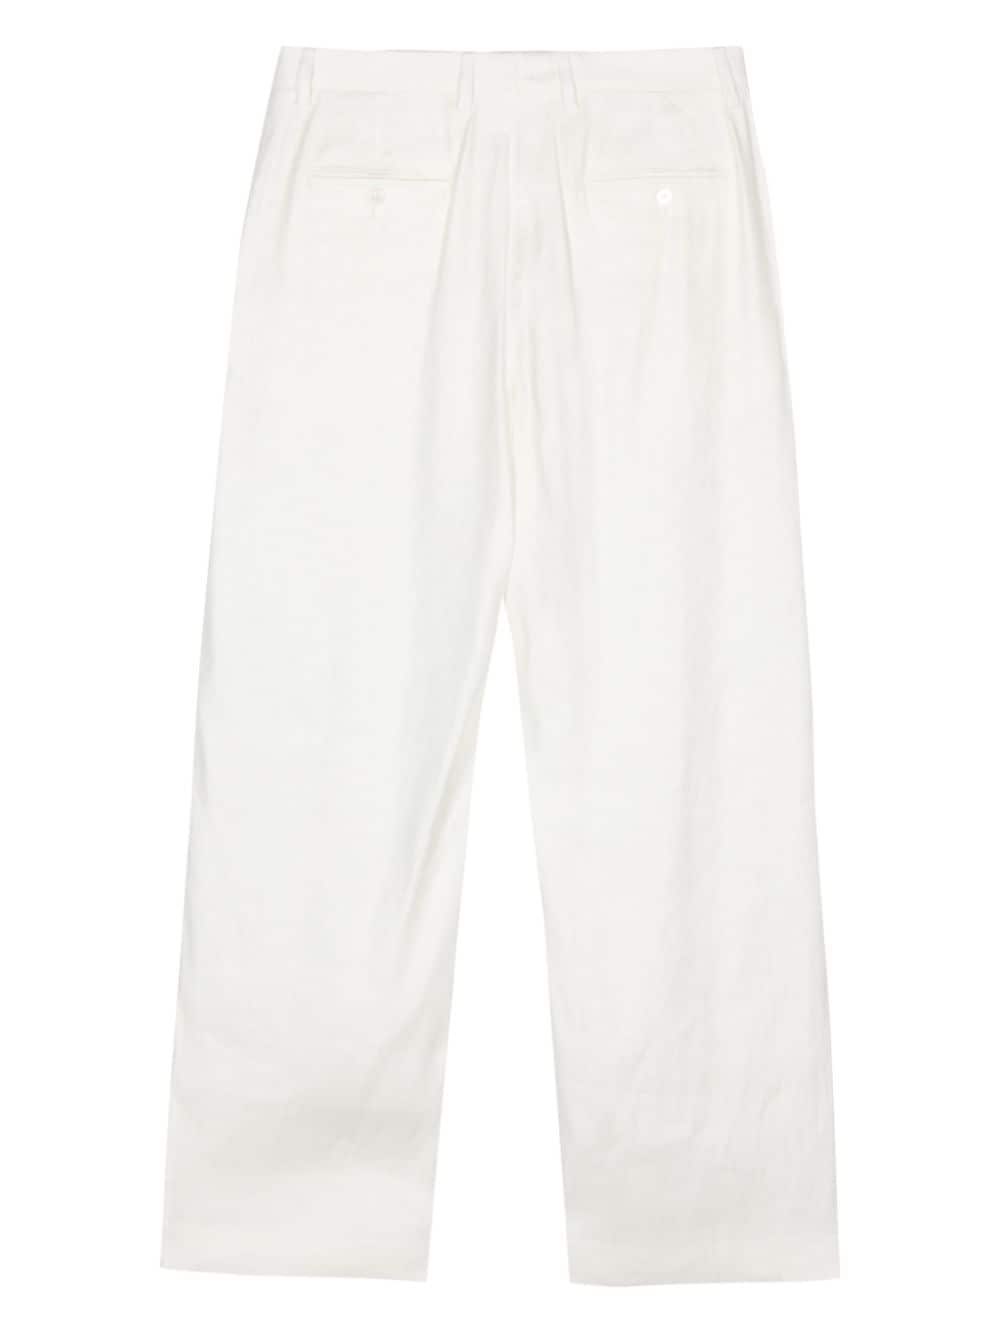 Lardini pleat-detail trousers - Beige